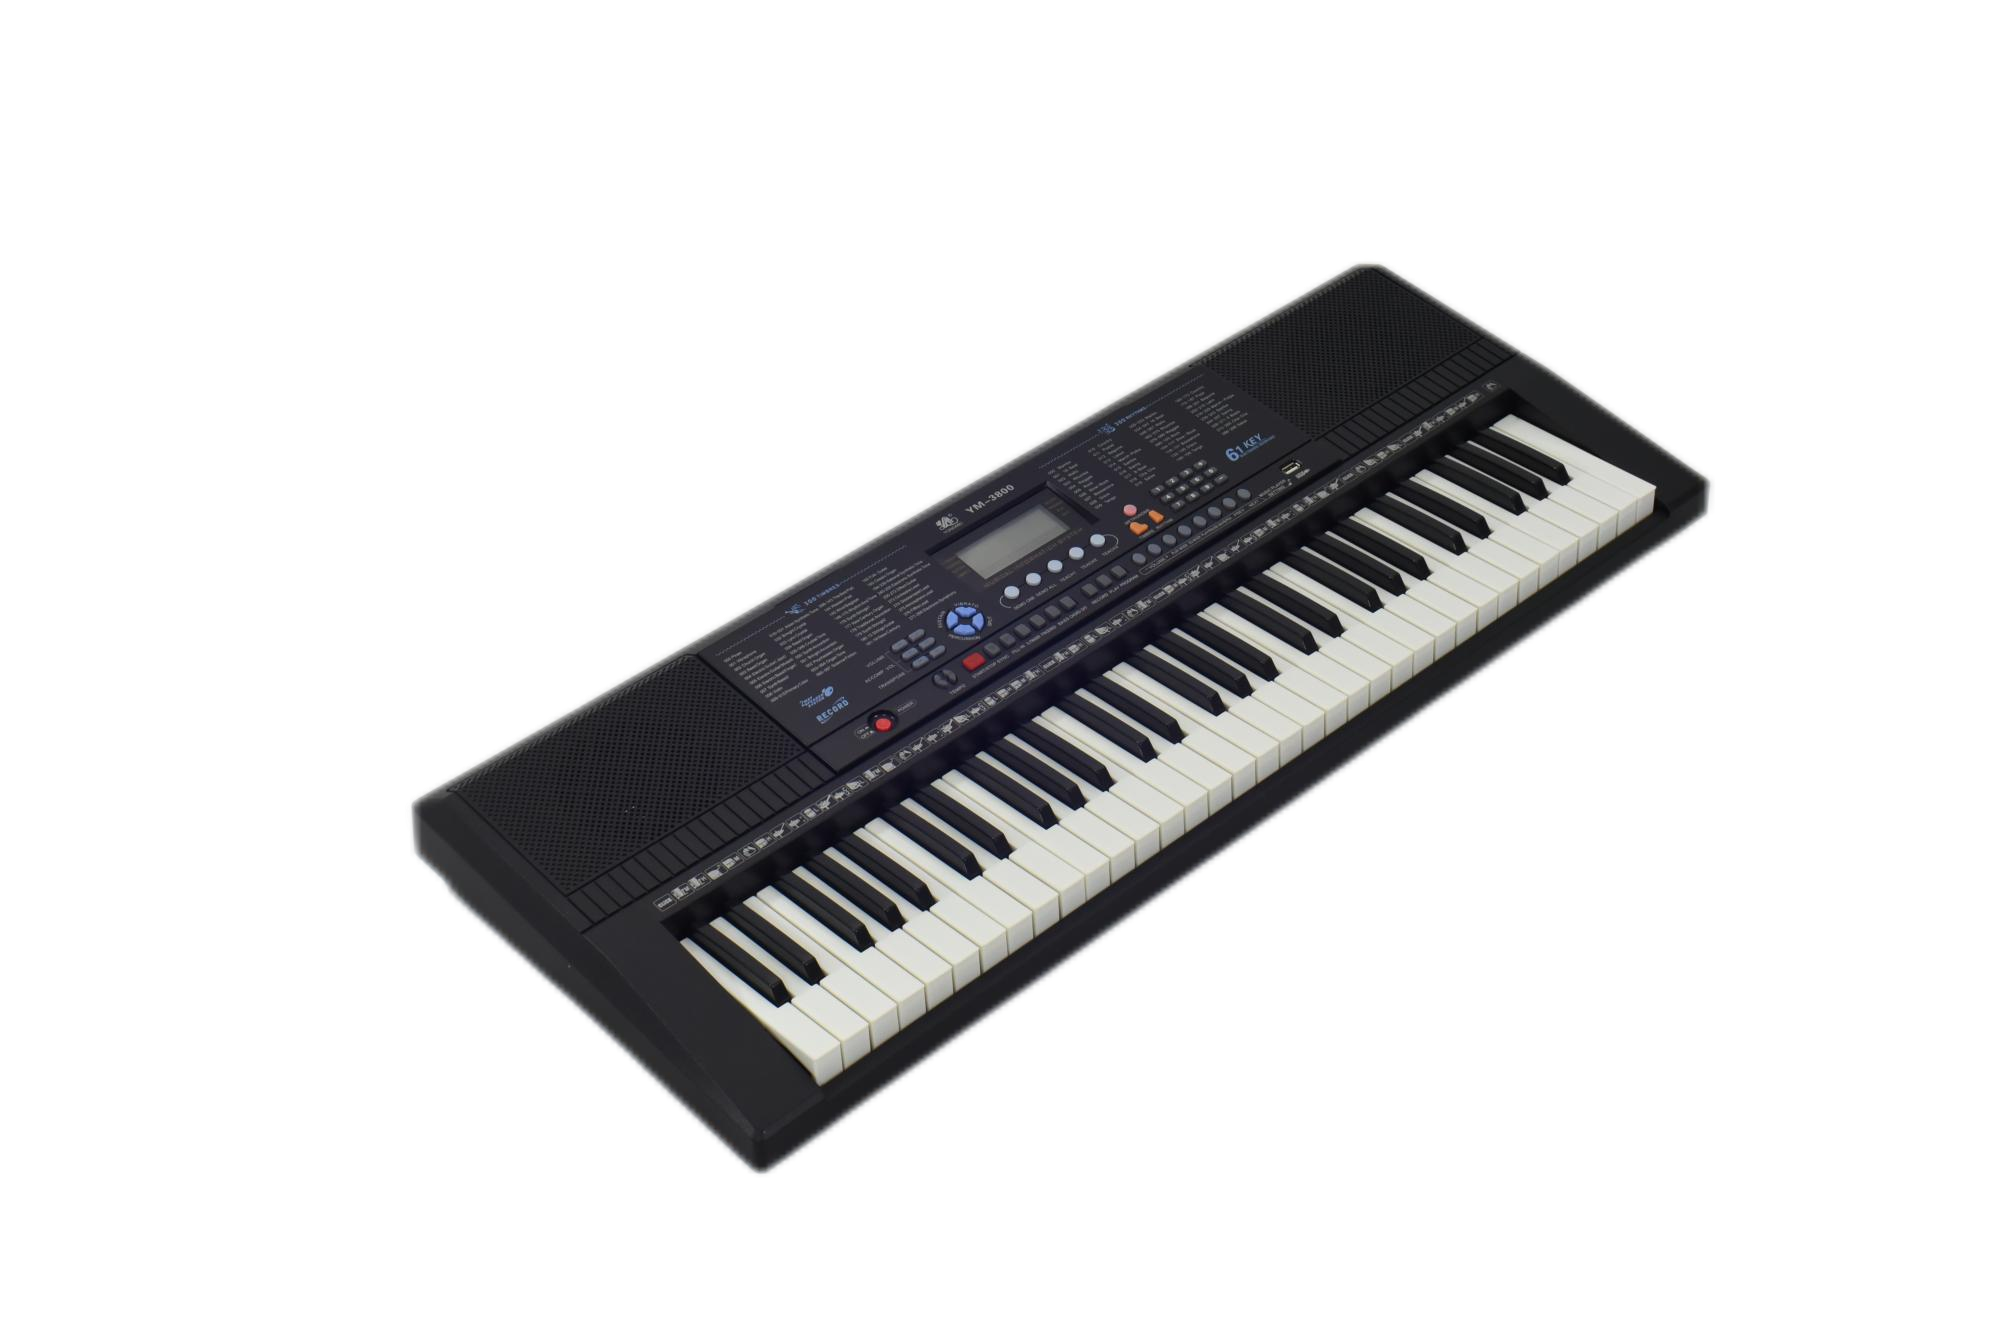  Электрическая клавиатура с 61 клавишами/ЖК-дисплеем (MK613800)